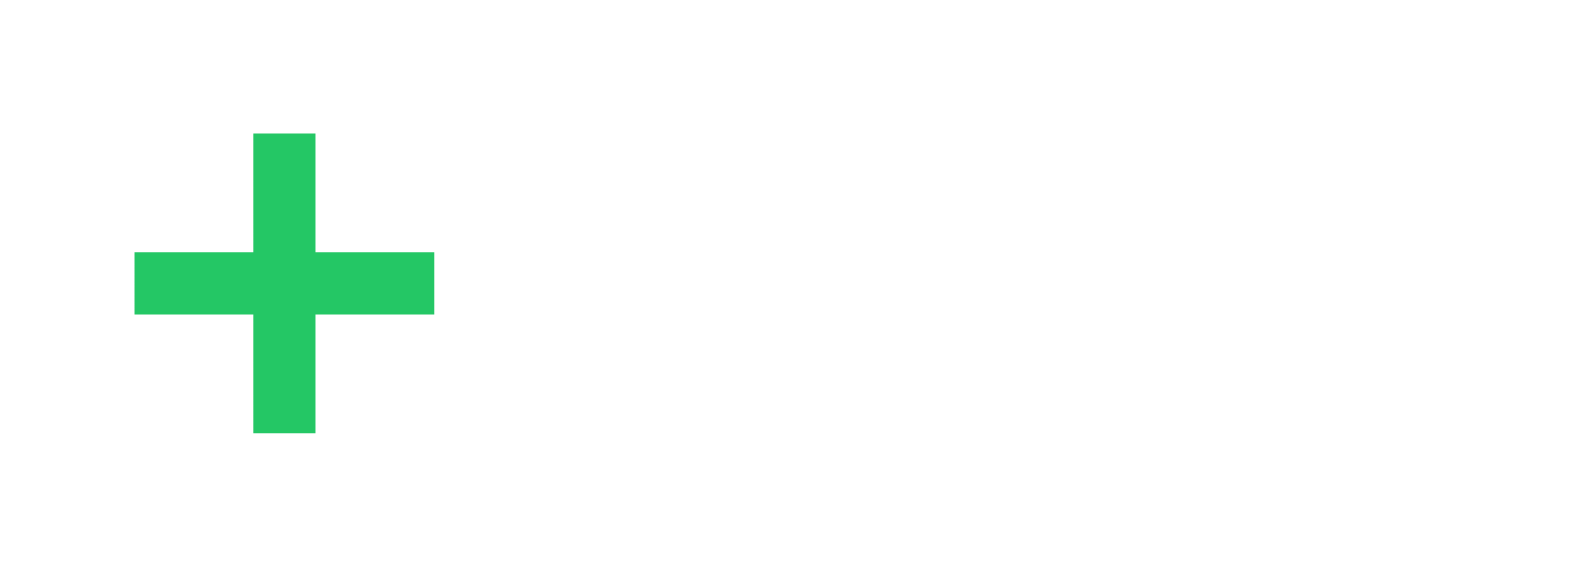 SES AI logo grand pour les fonds sombres (PNG transparent)